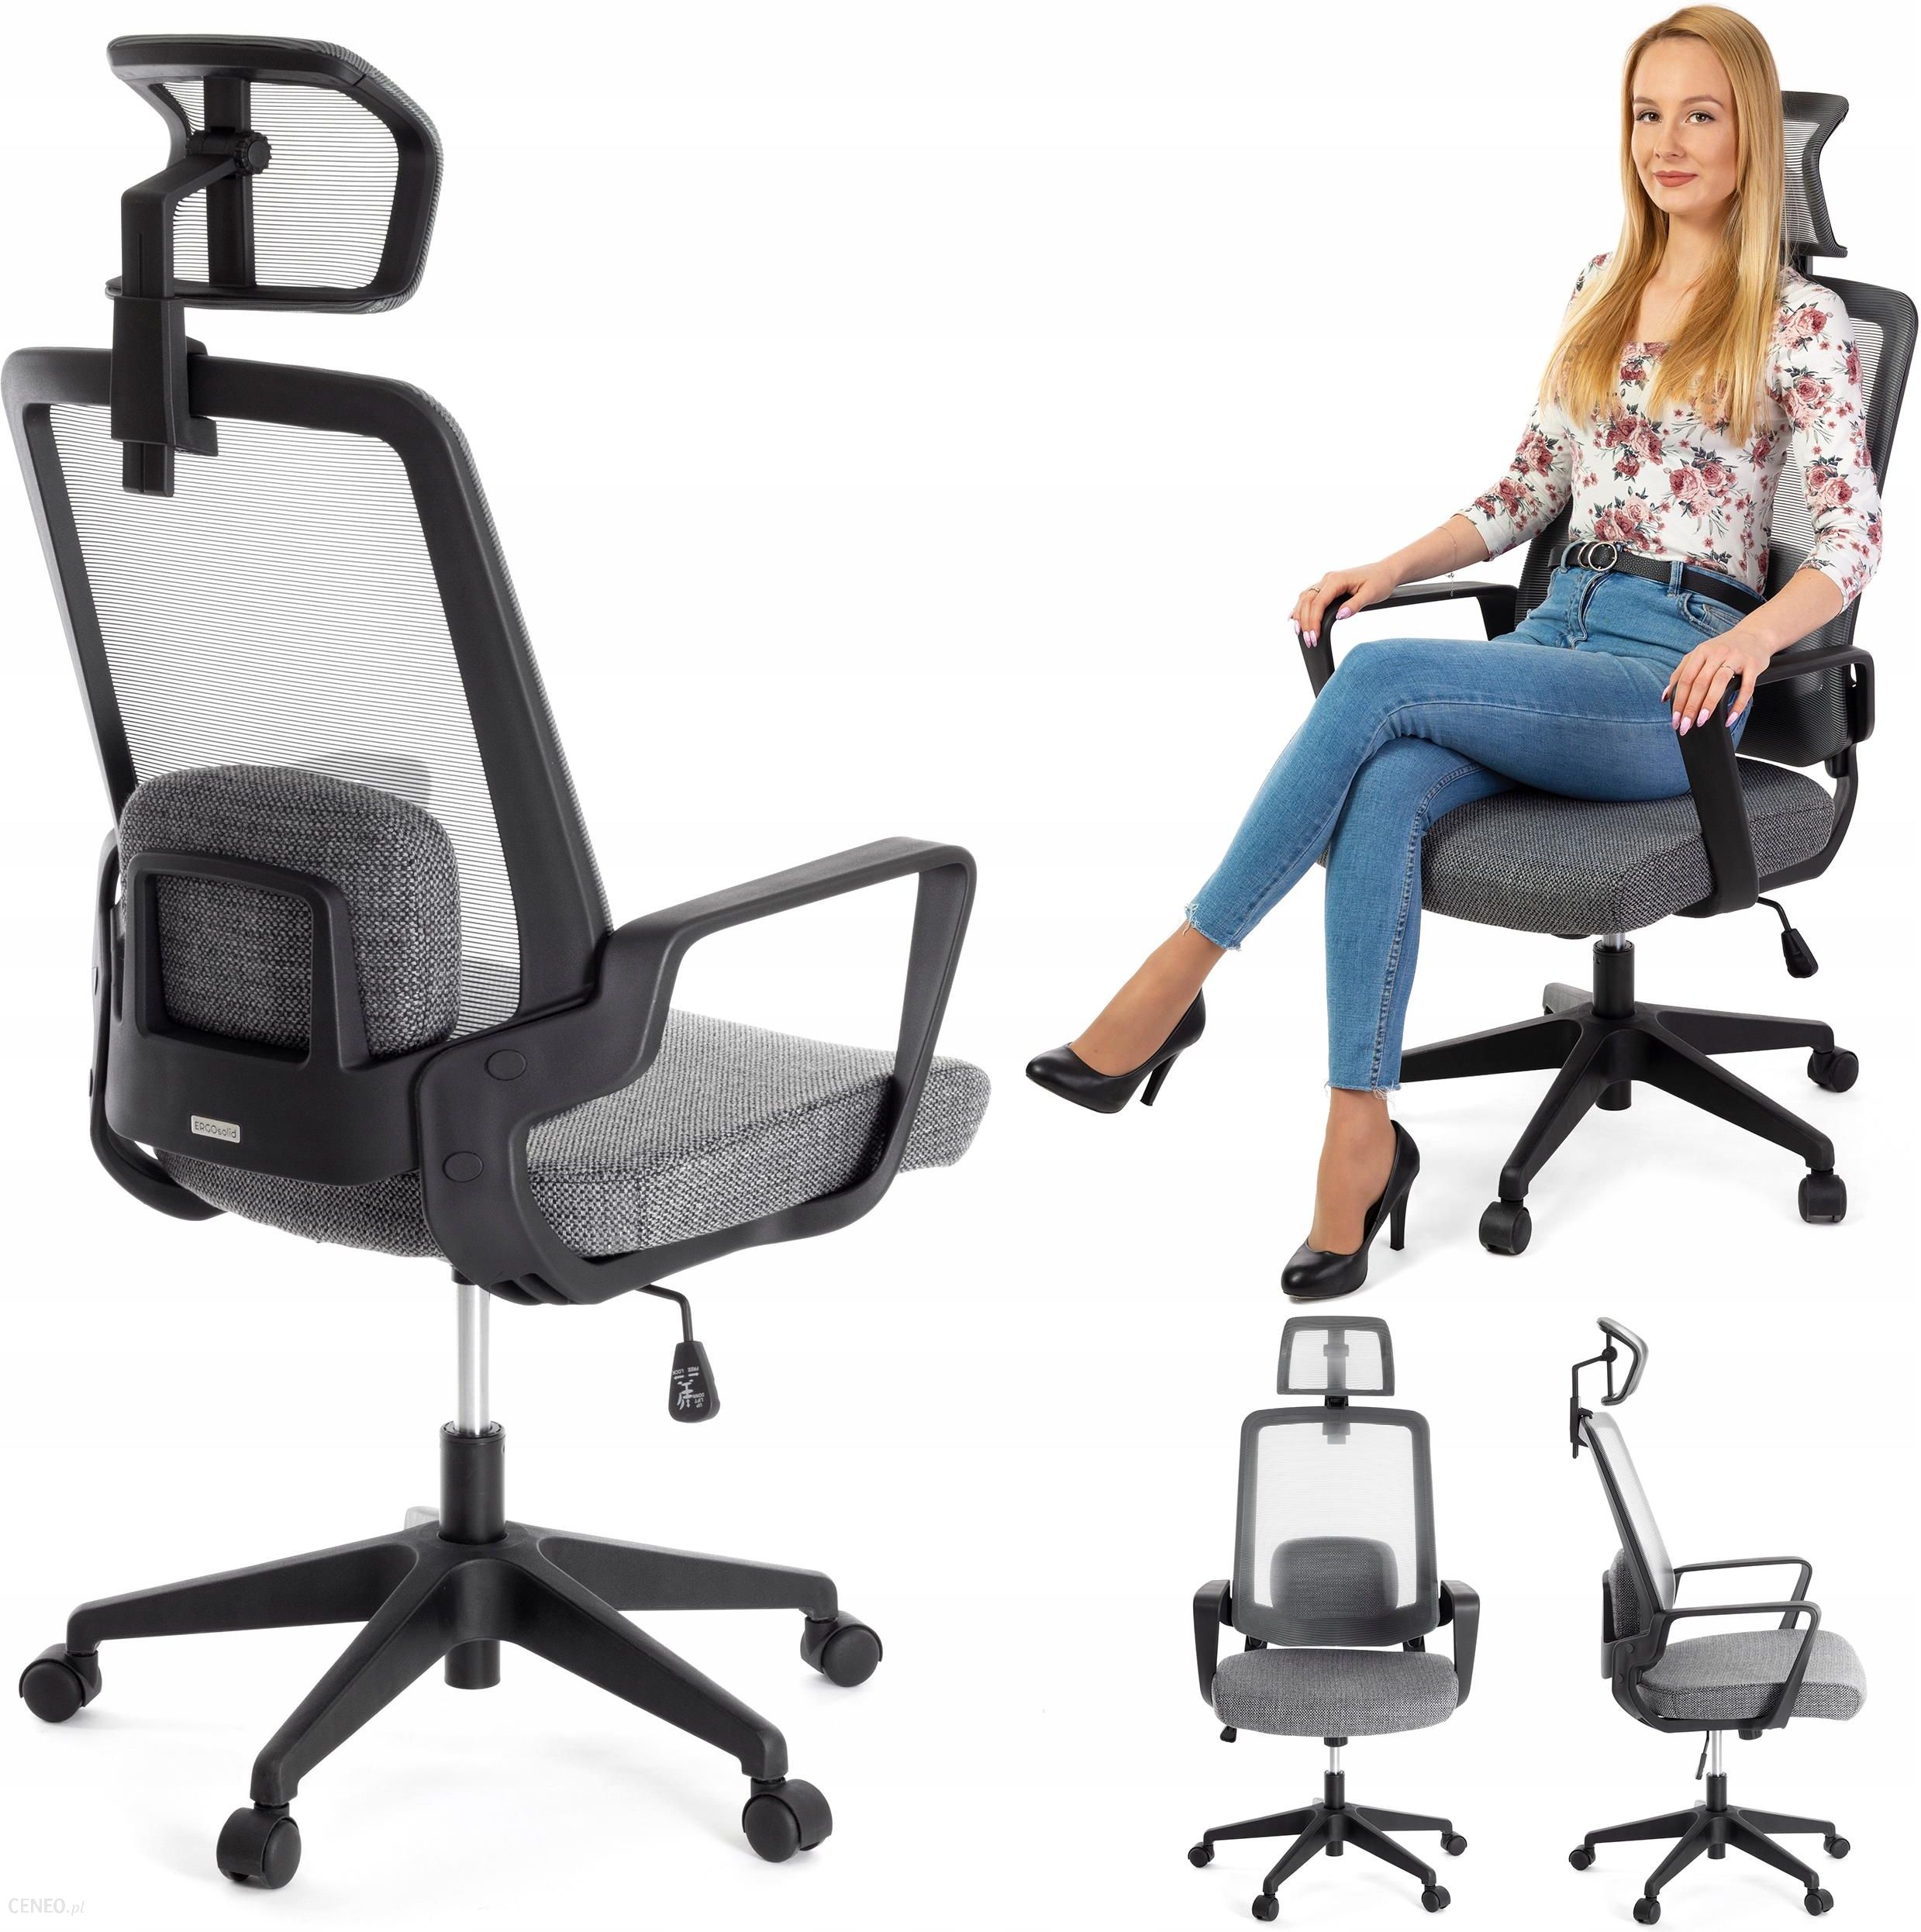 Ergonomiczny Fotel Biurowy Krzeslo Obrotowe Amo70 Ceny I Opinie Ceneo Pl